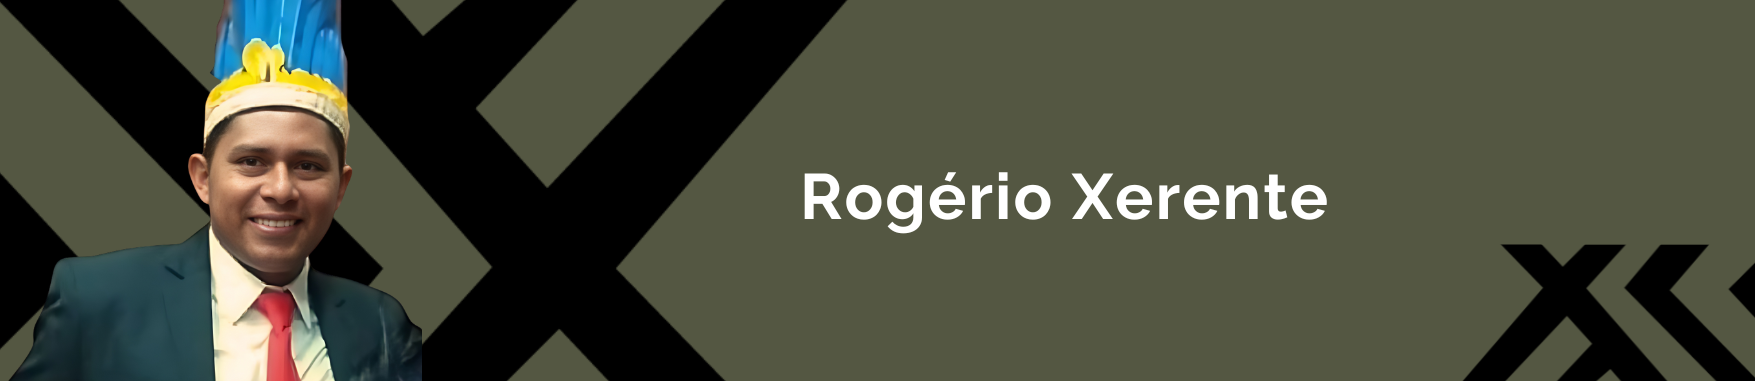 Banner com a imagem do Rogério Xerente